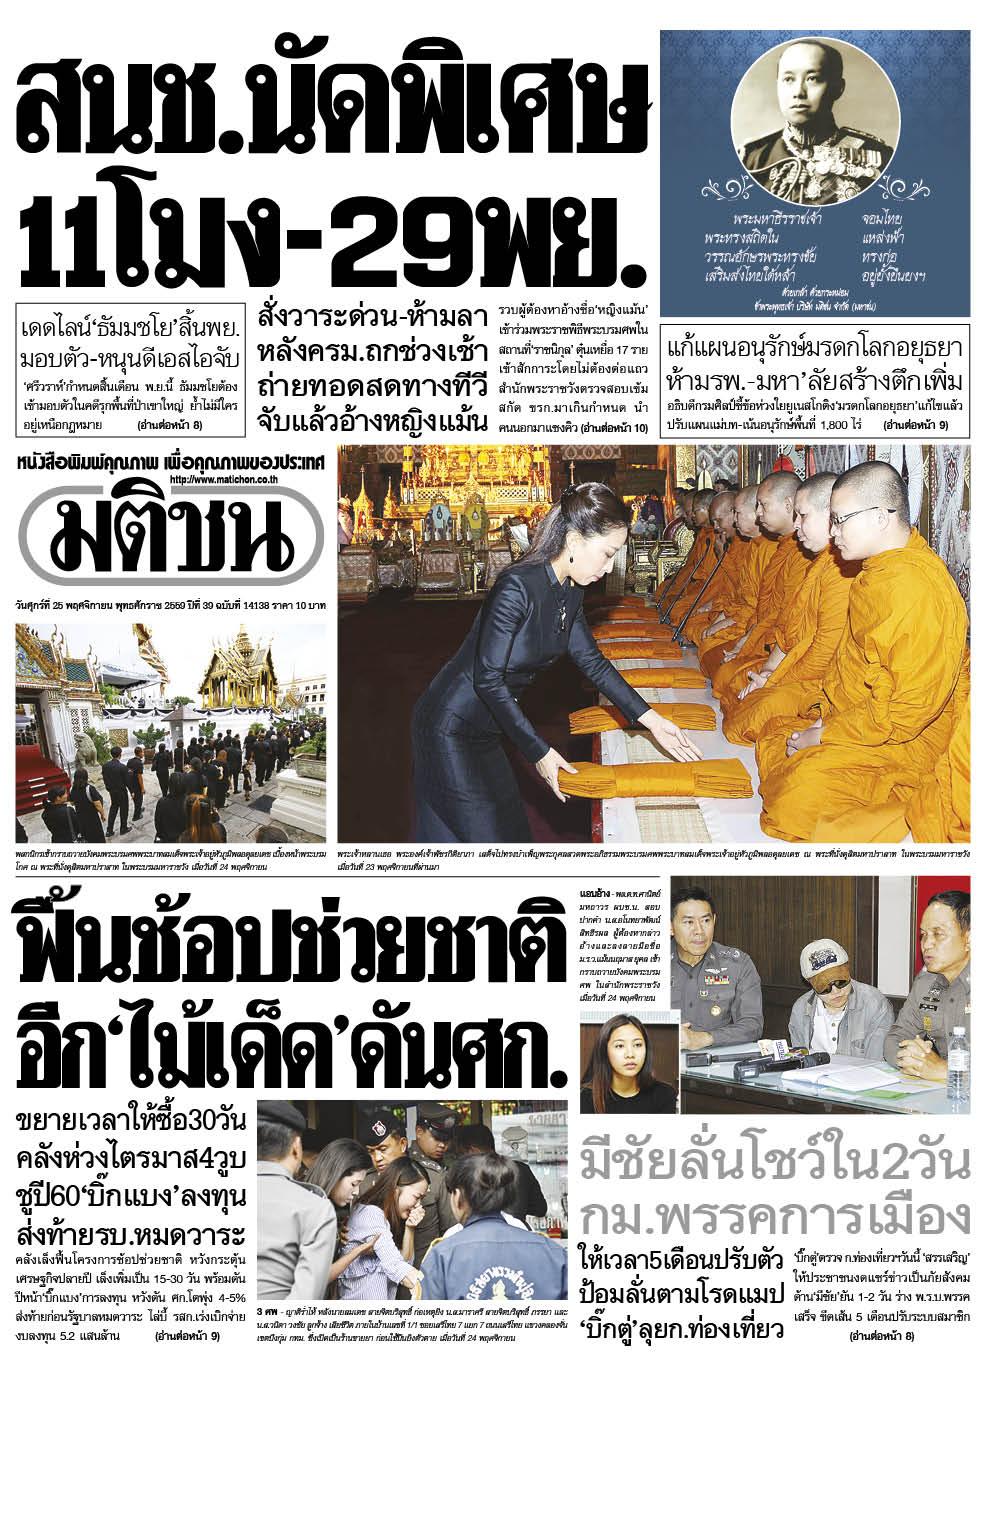 การเมืองการปกครองไทยในปัจจุบัน